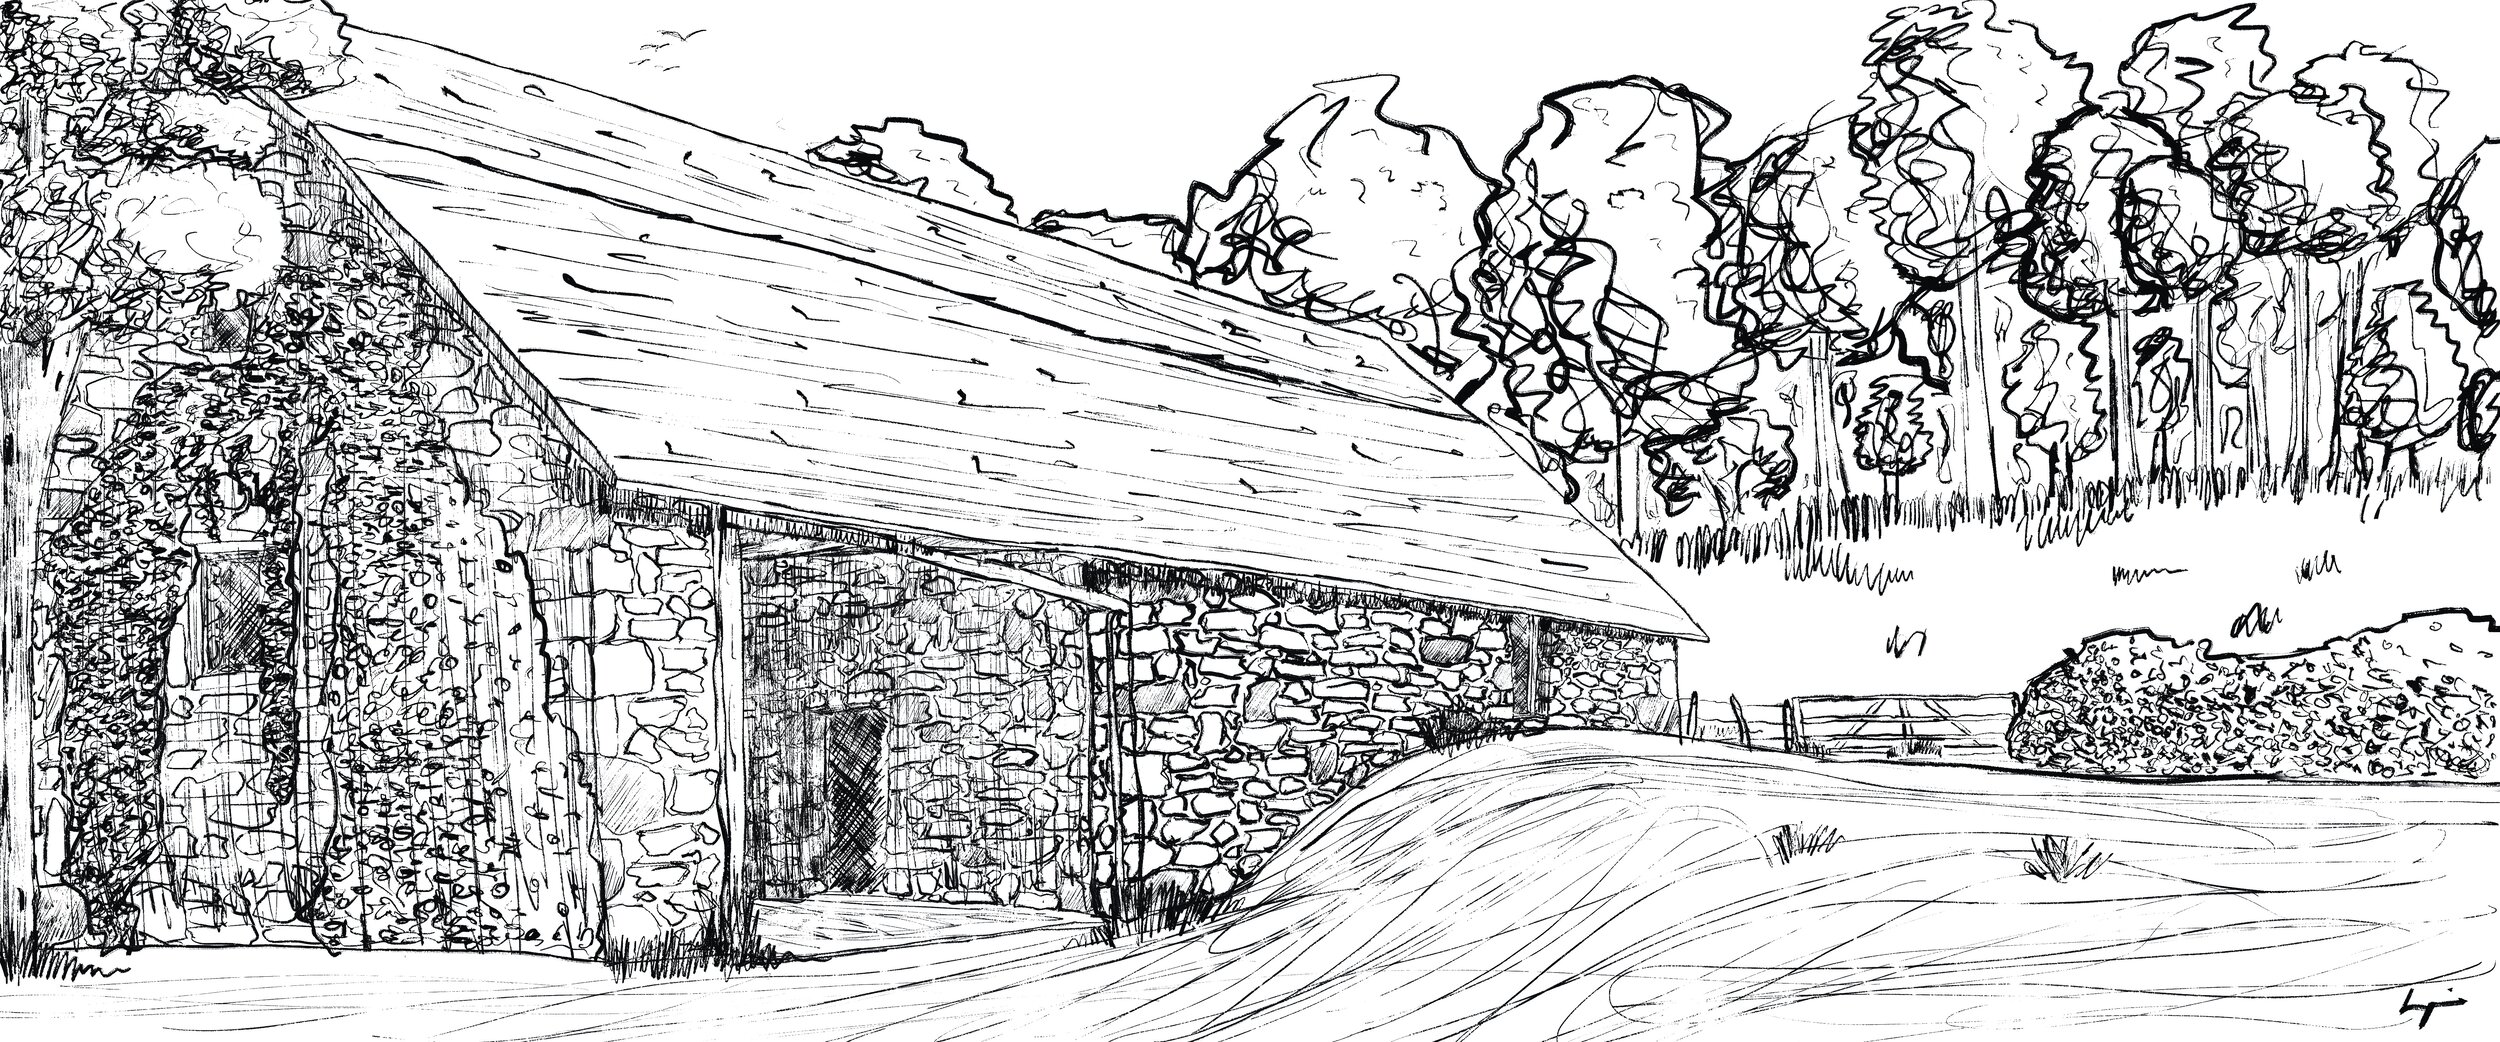 Apple Barn, 1726 Farm